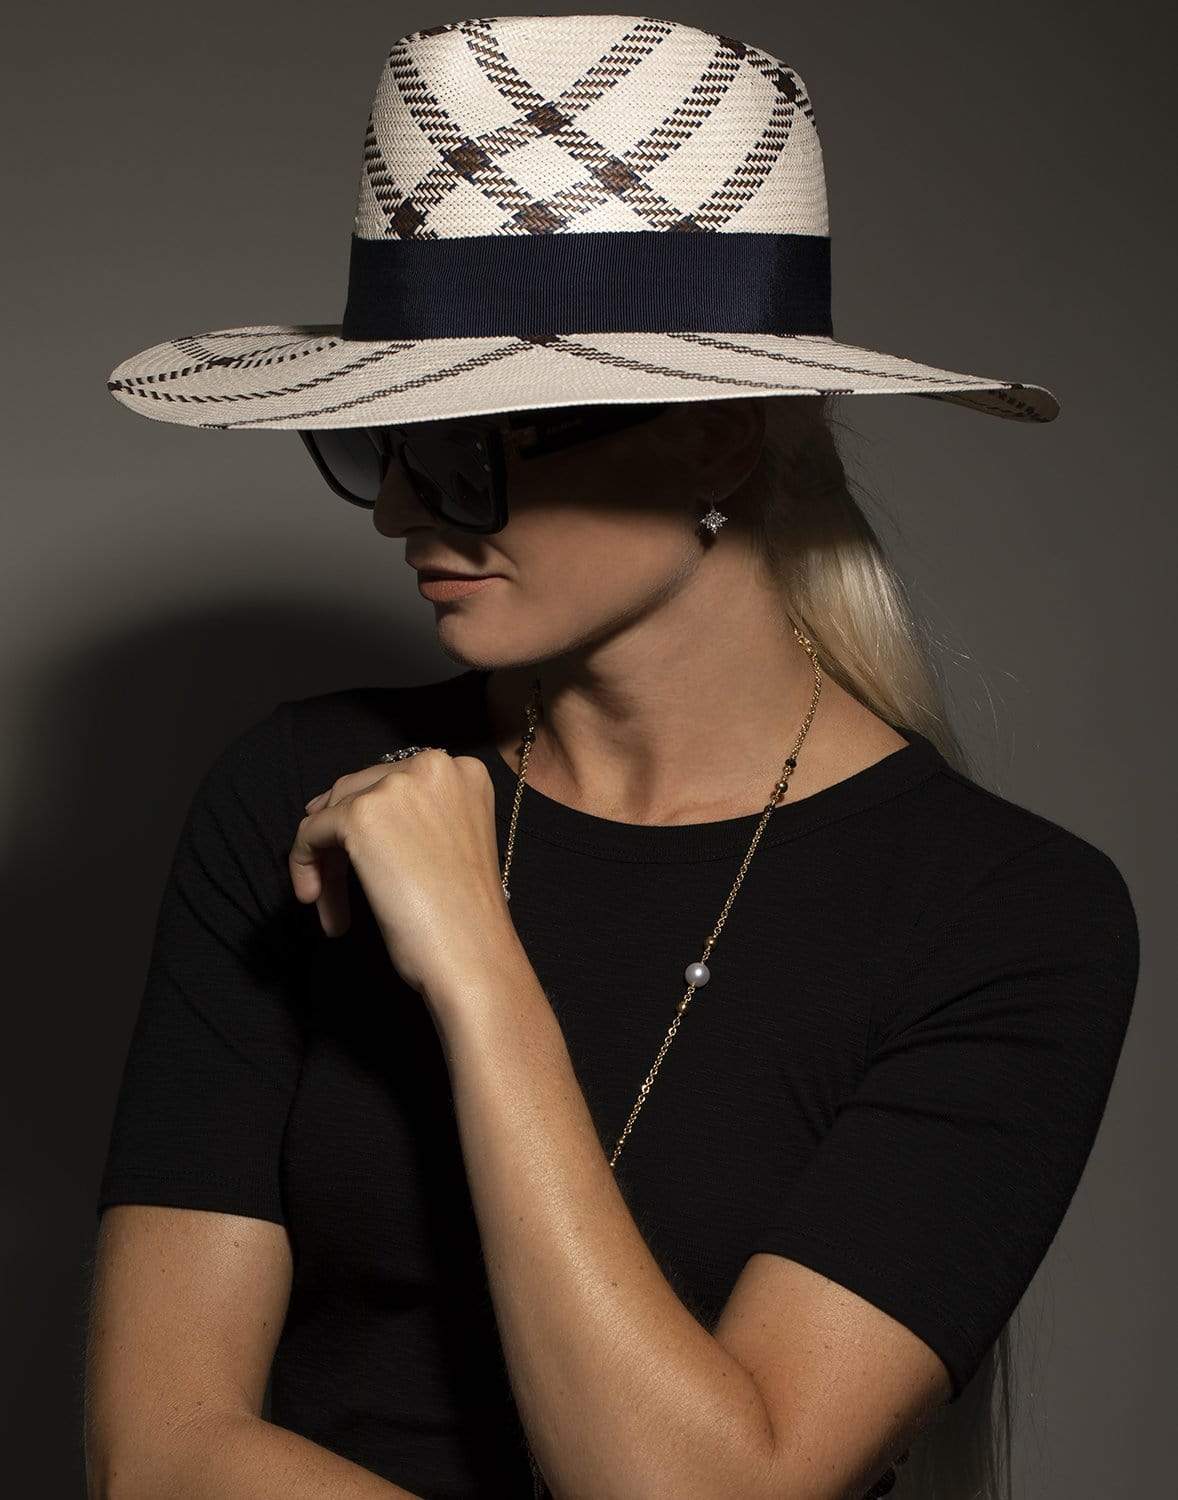 RAFFAELLO BETTINI-Large Brim Paper Hat with Bow-